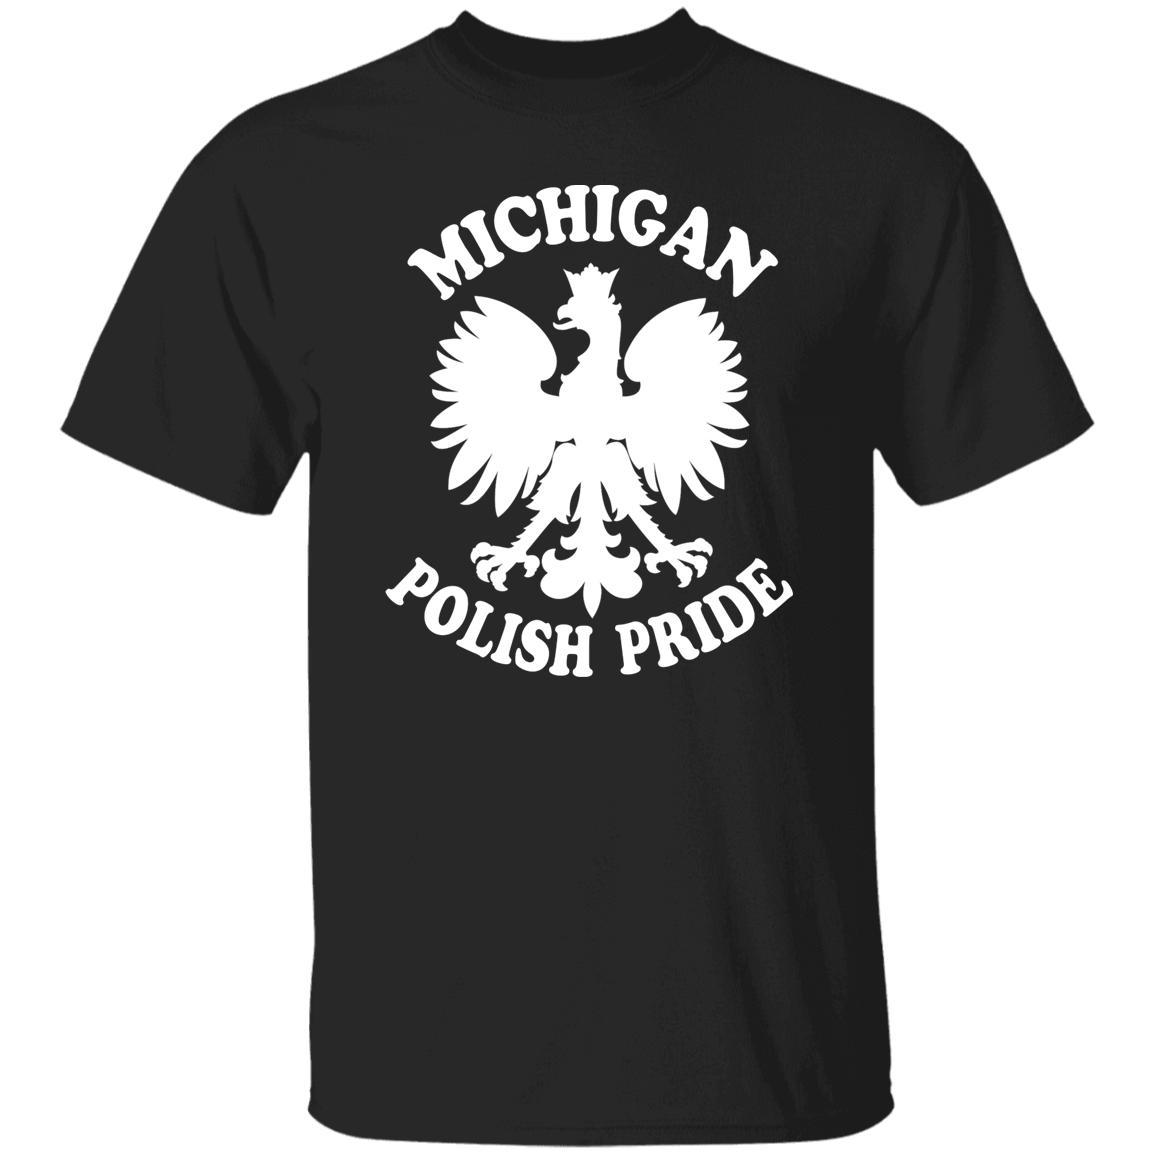 Michigan Polish Pride Apparel CustomCat G500 5.3 oz. T-Shirt Black S